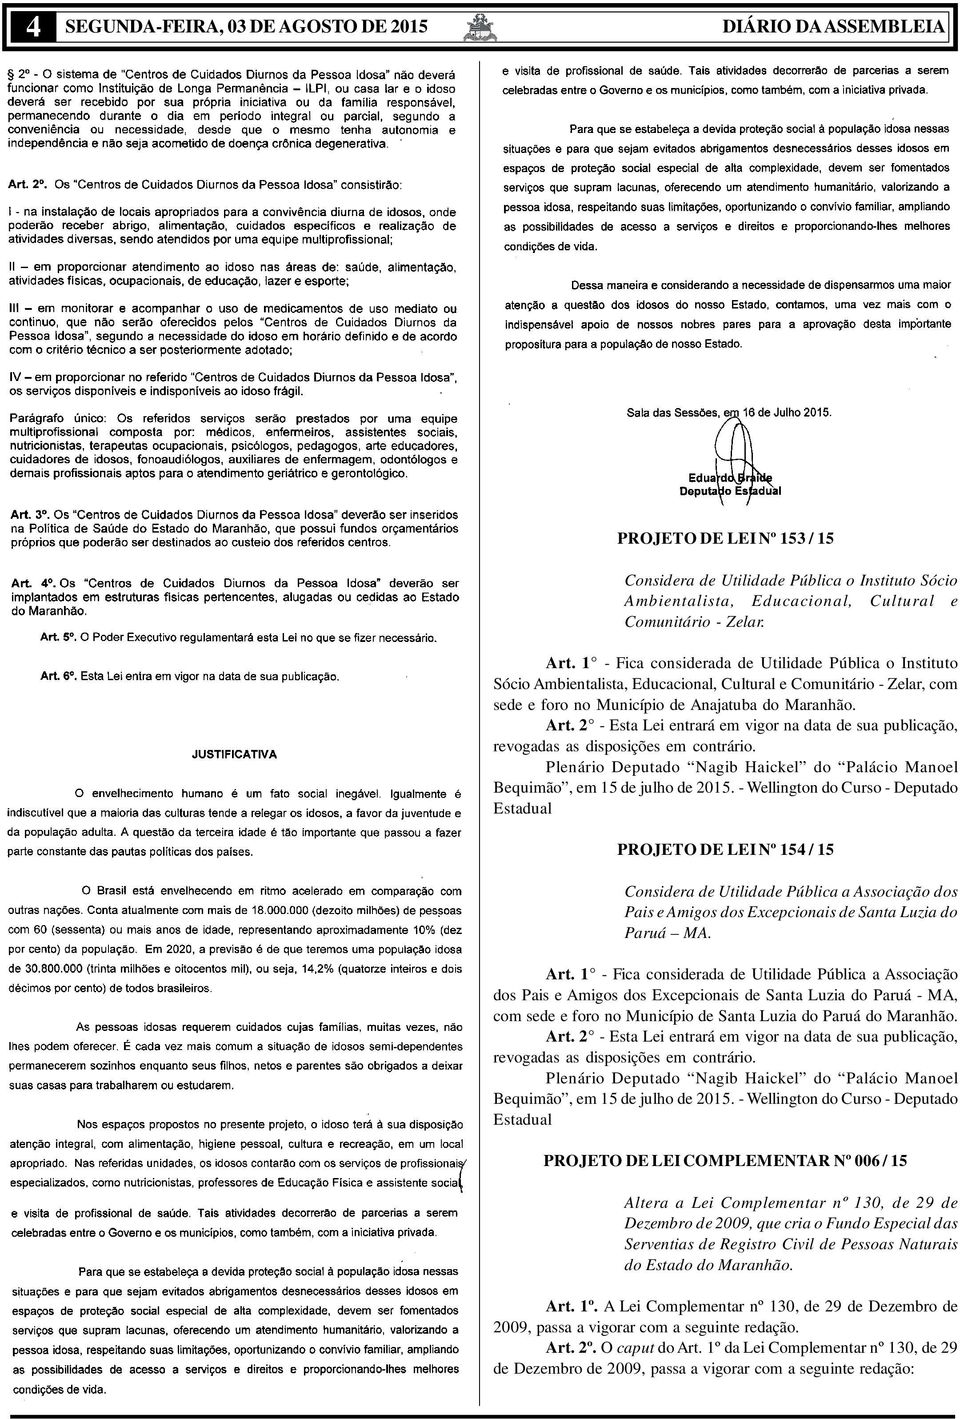 2 - Esta Lei entrará em vigor na data de sua publicação, revogadas as disposições em contrário. Plenário Deputado Nagib Haickel do Palácio Manoel Bequimão, em 15 de julho de 2015.